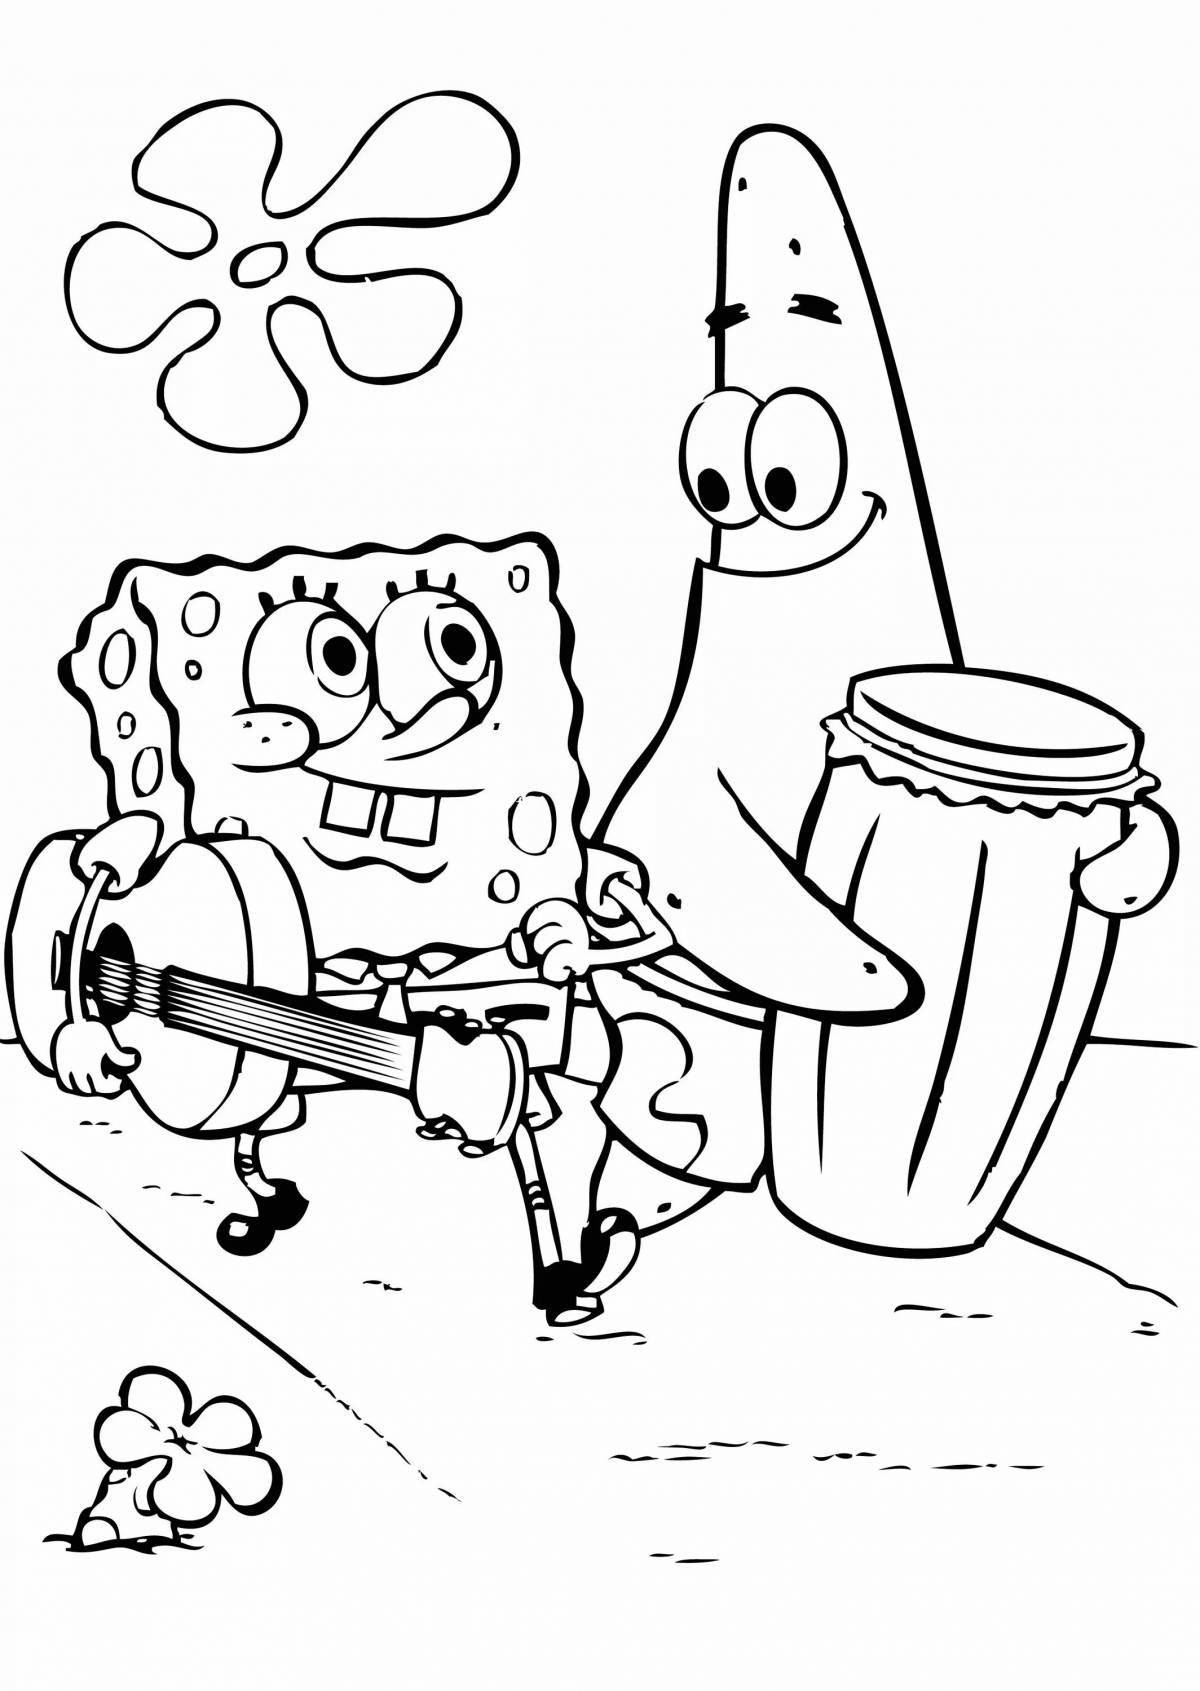 Spongebob fun coloring book